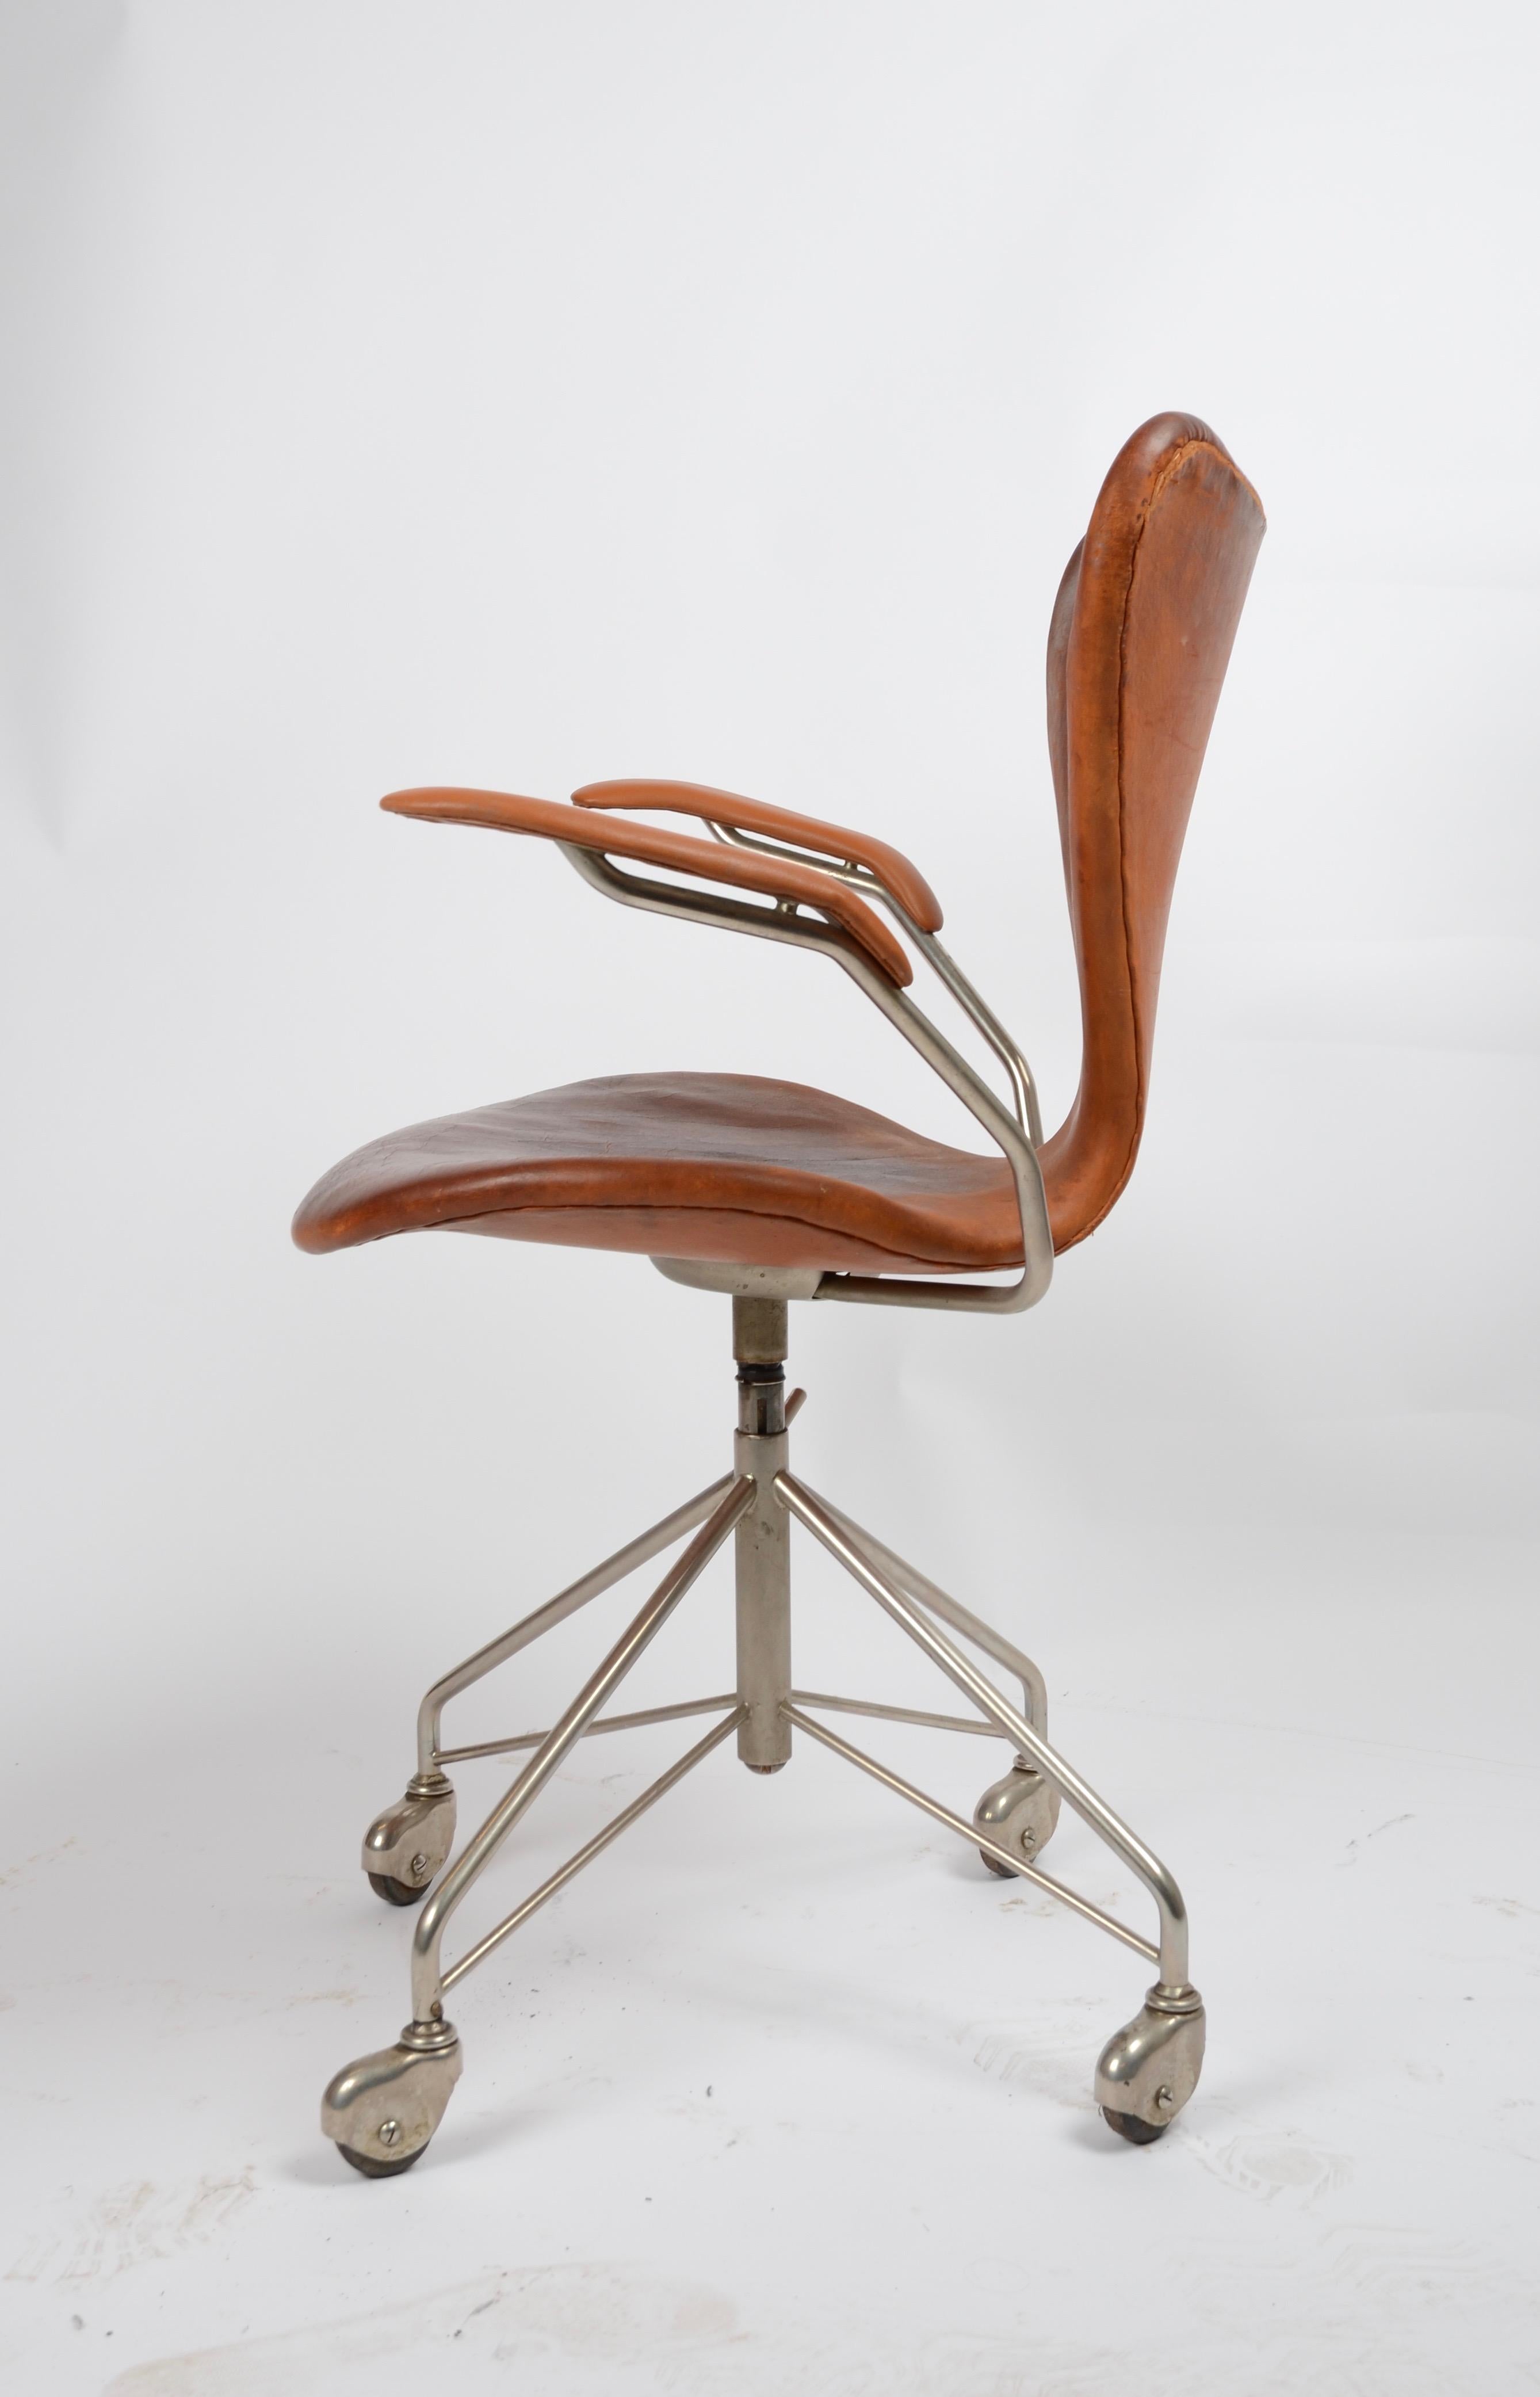 Swivel chair model ´Sjuan/Seven´/ AJ 3217, designed by Arne Jacobsen for Fritz Hansen, 1950s-1960s.

 